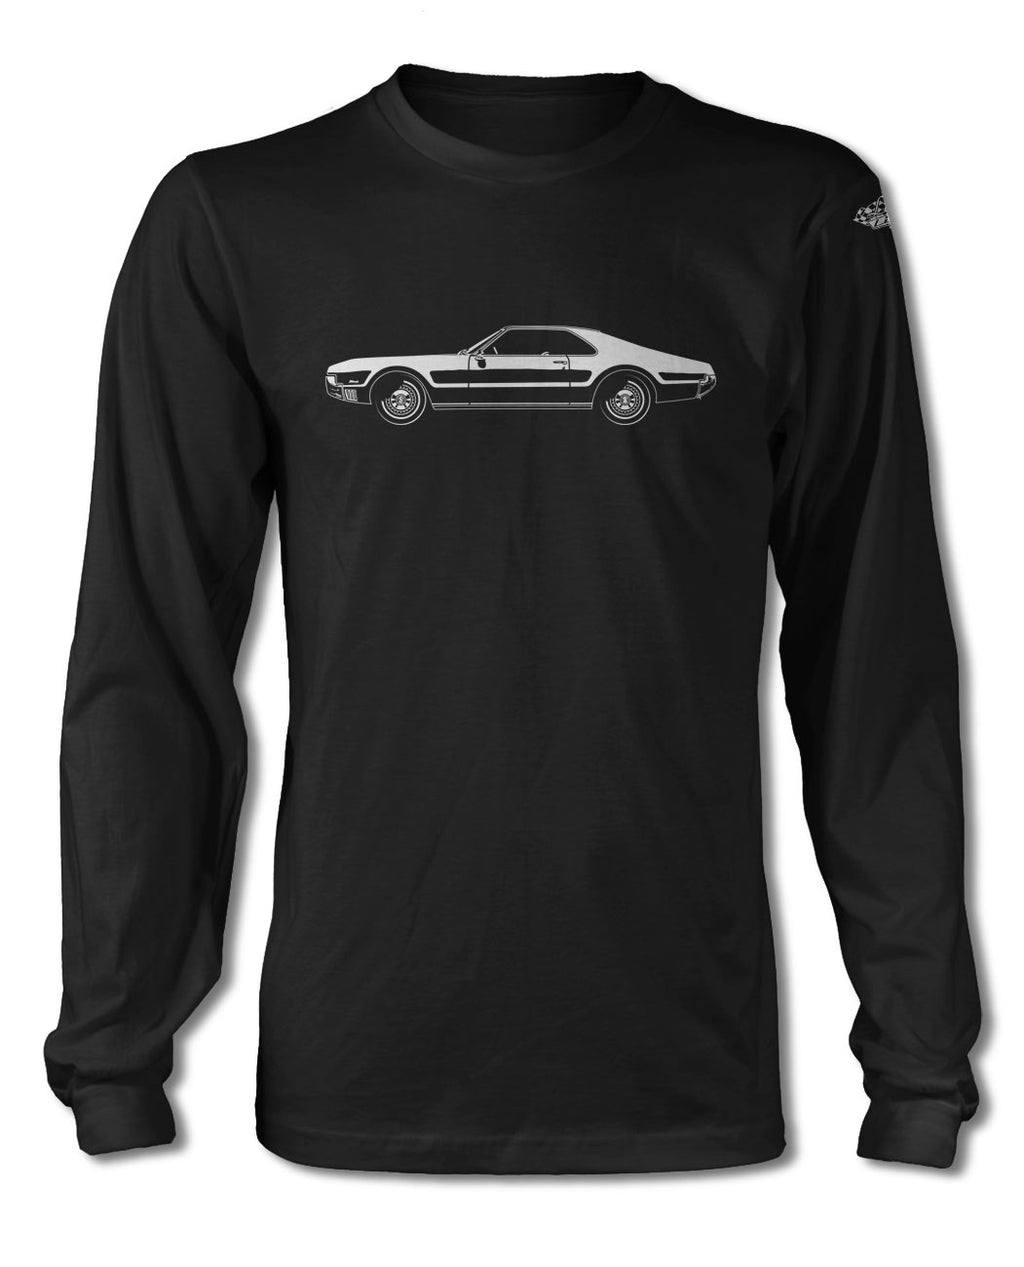 1967 Oldsmobile Toronado T-Shirt - Long Sleeves - Side View